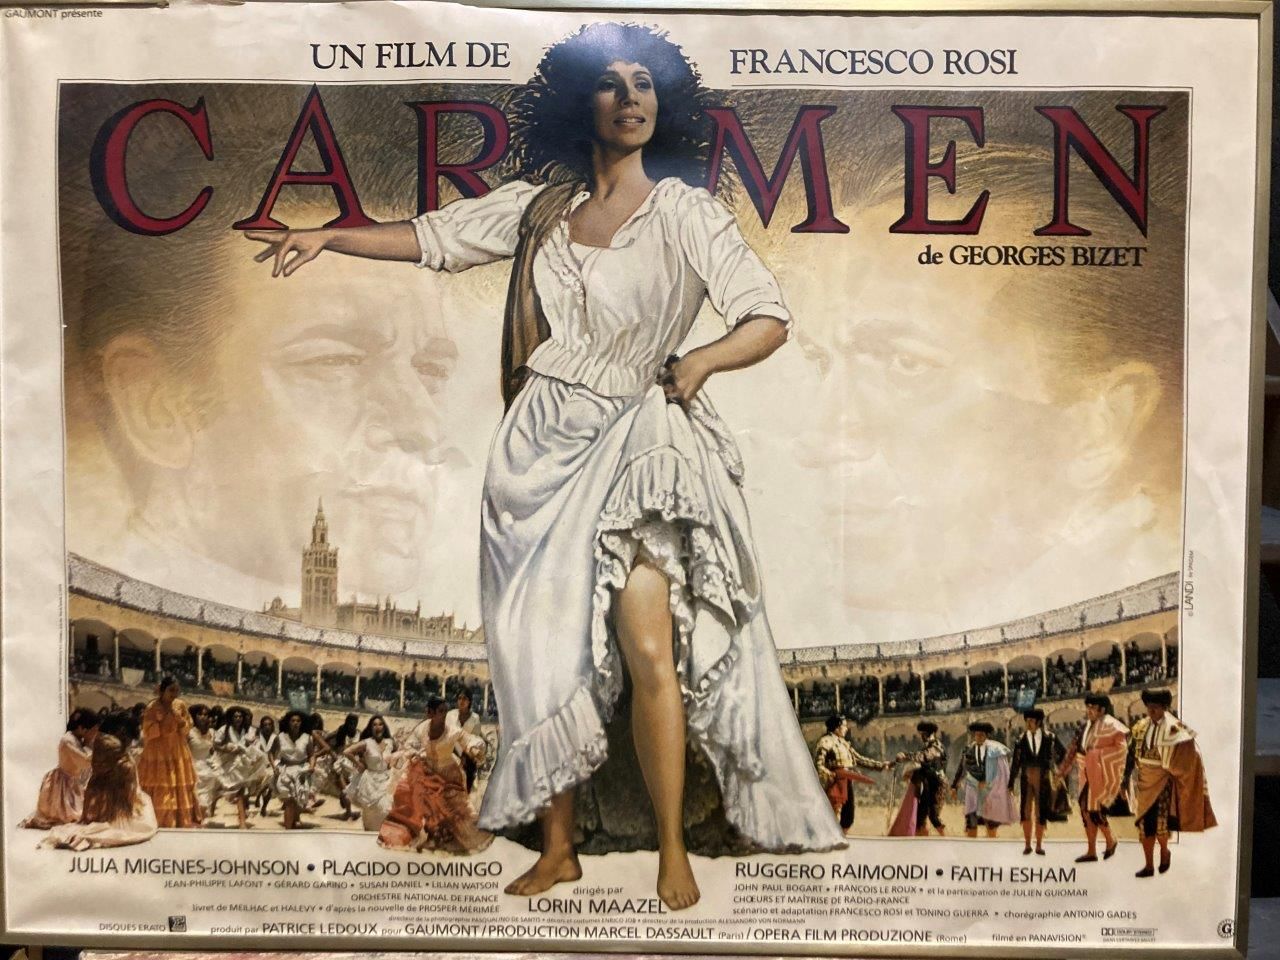 Fransceso Rosi CARMEN

Cartel de la película

59 x 79 cm enmarcado